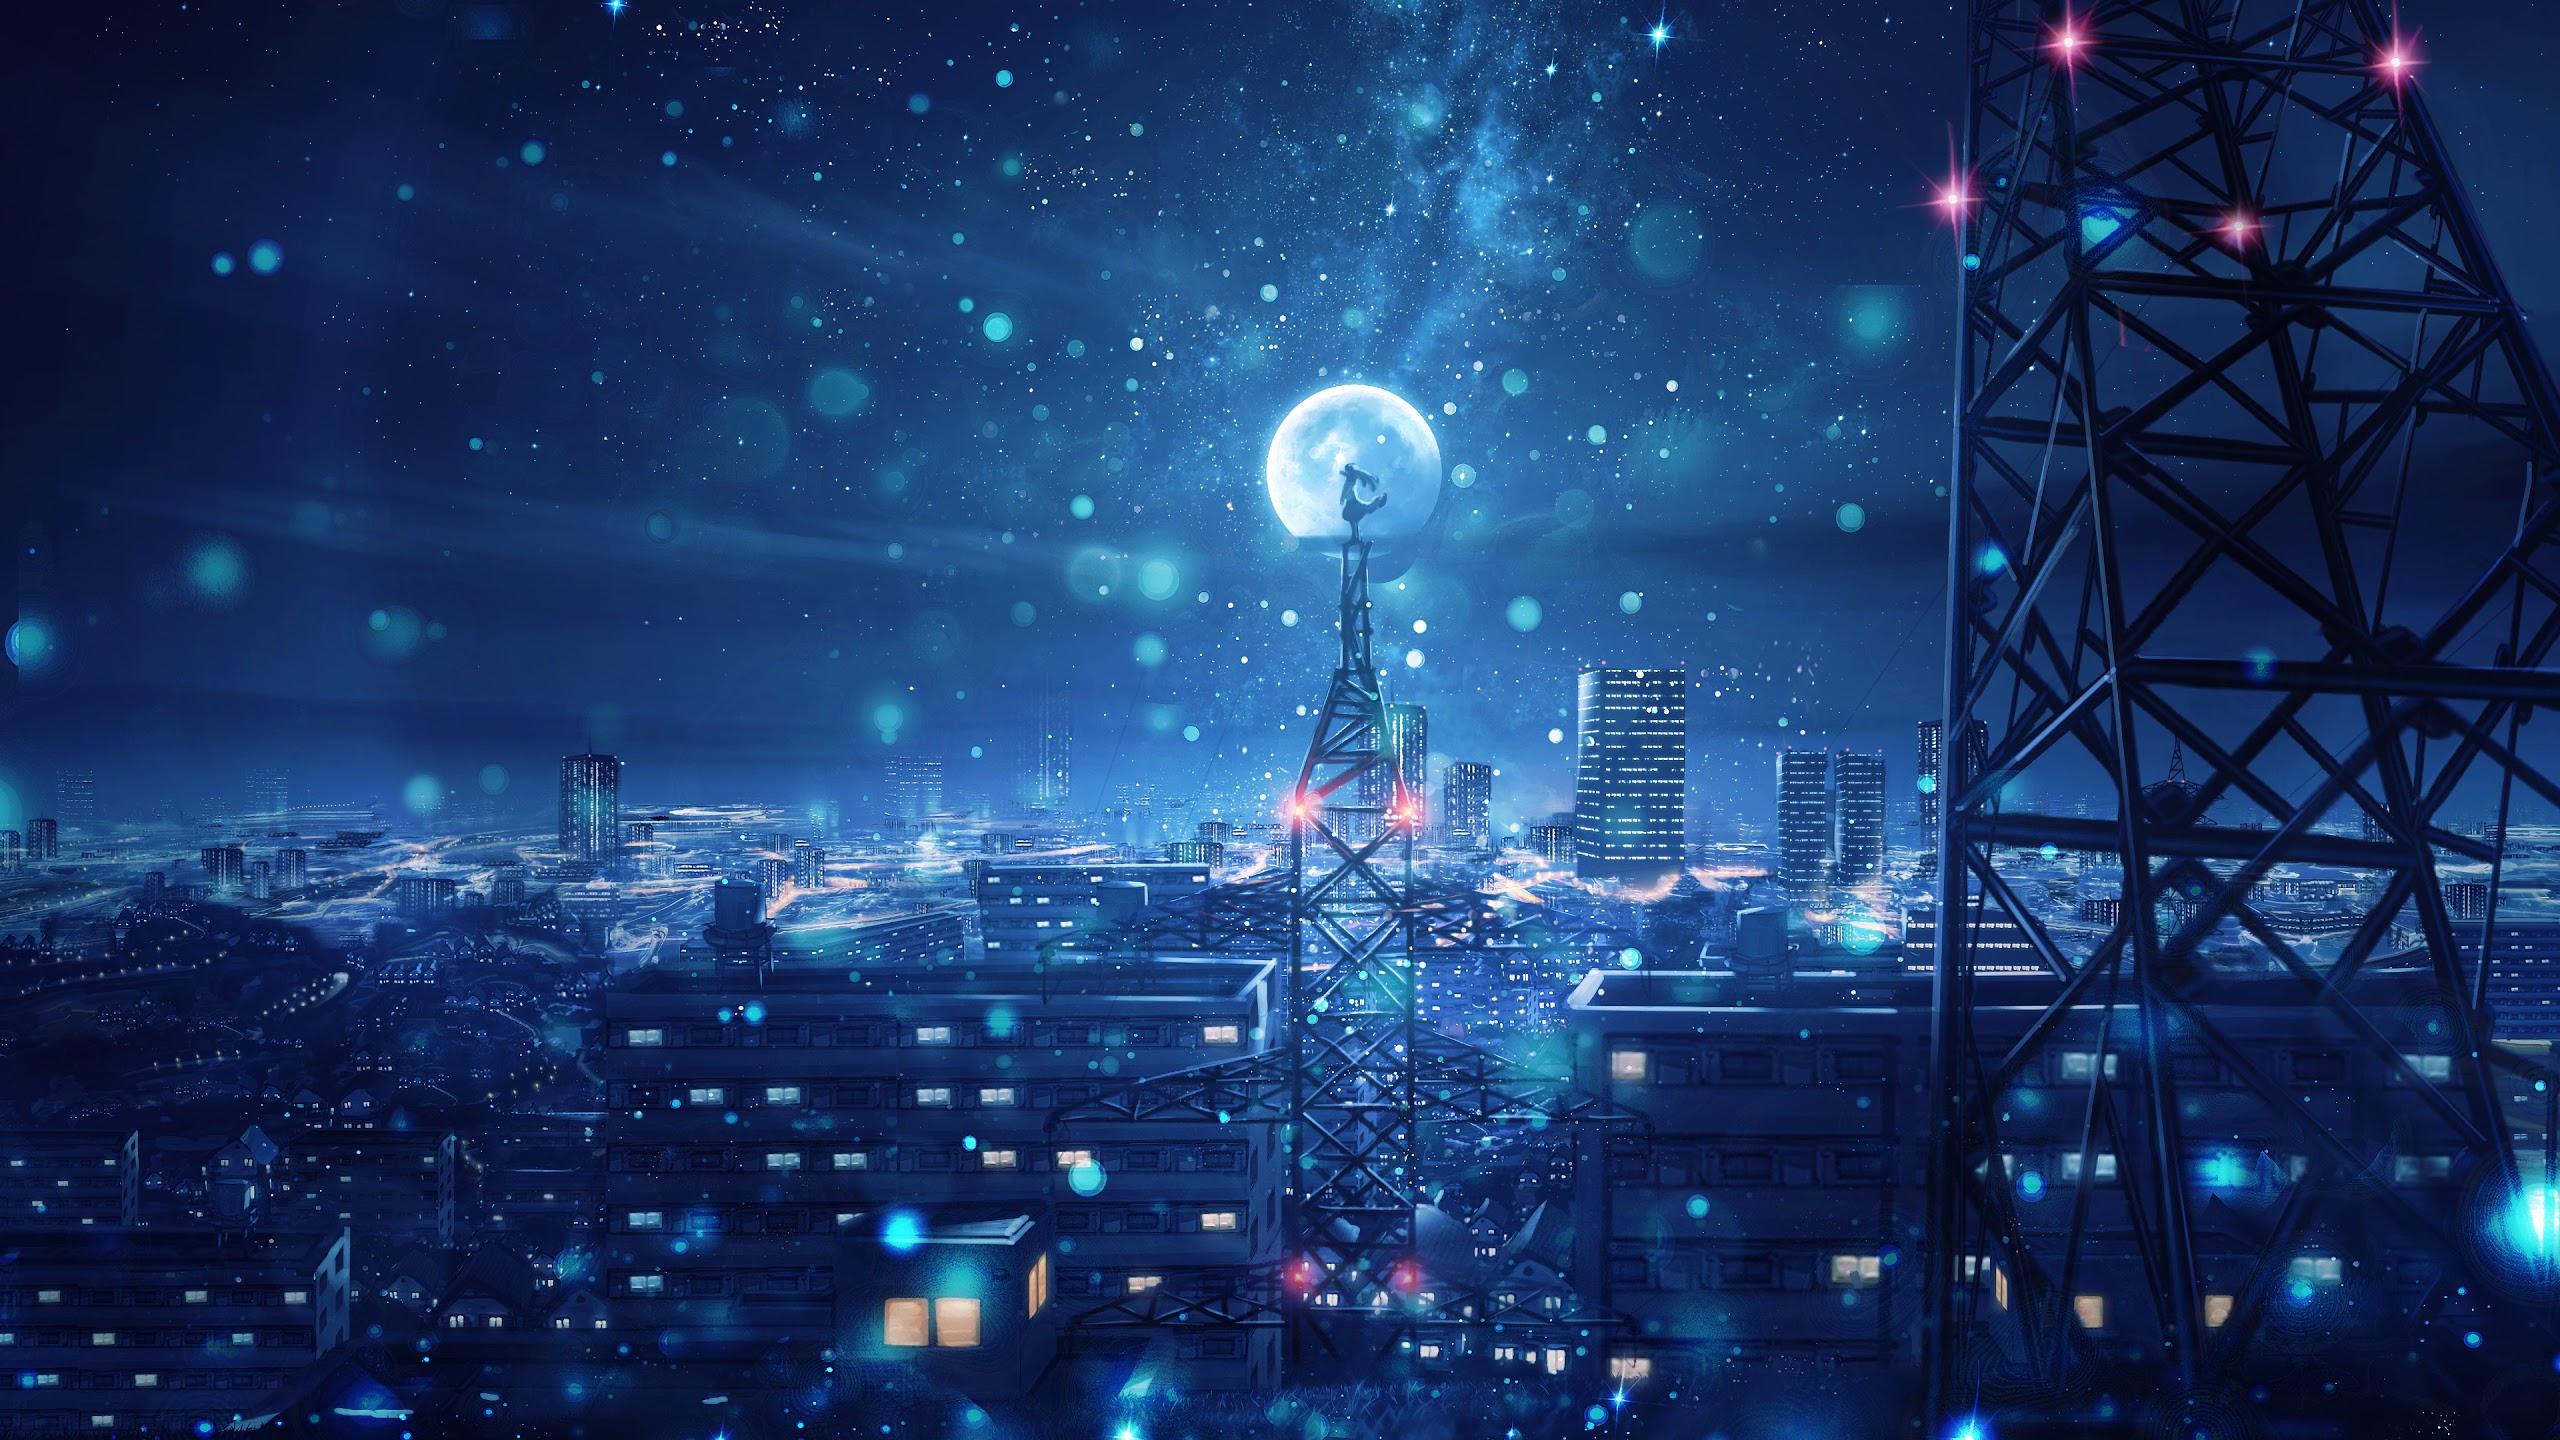 Night Sky City Stars Anime Scenery 4K .uhdpaper.com